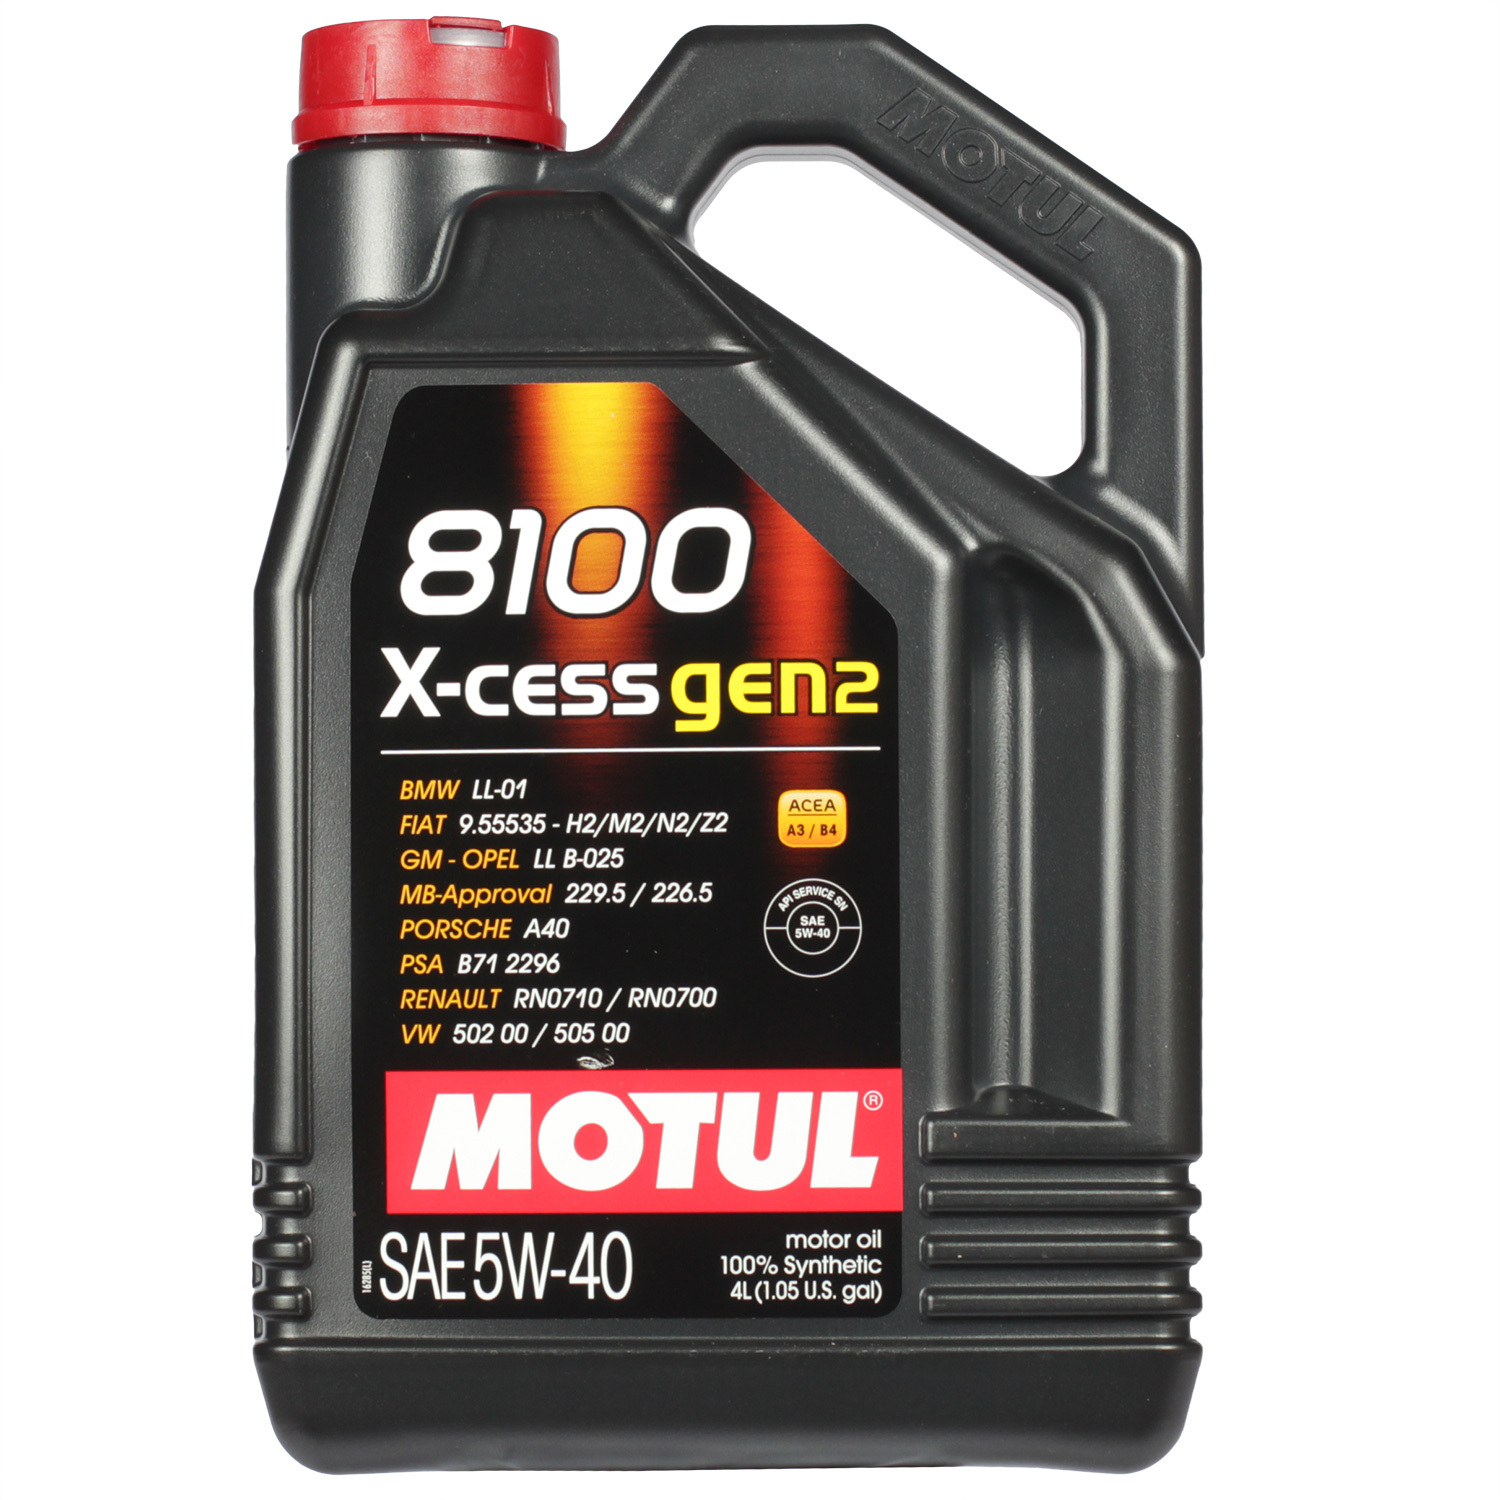 Motul Моторное масло Motul 8100 X-cess gen2 5W-40, 4 л motul моторное масло motul 8100 eco nergy 5w 30 5 л